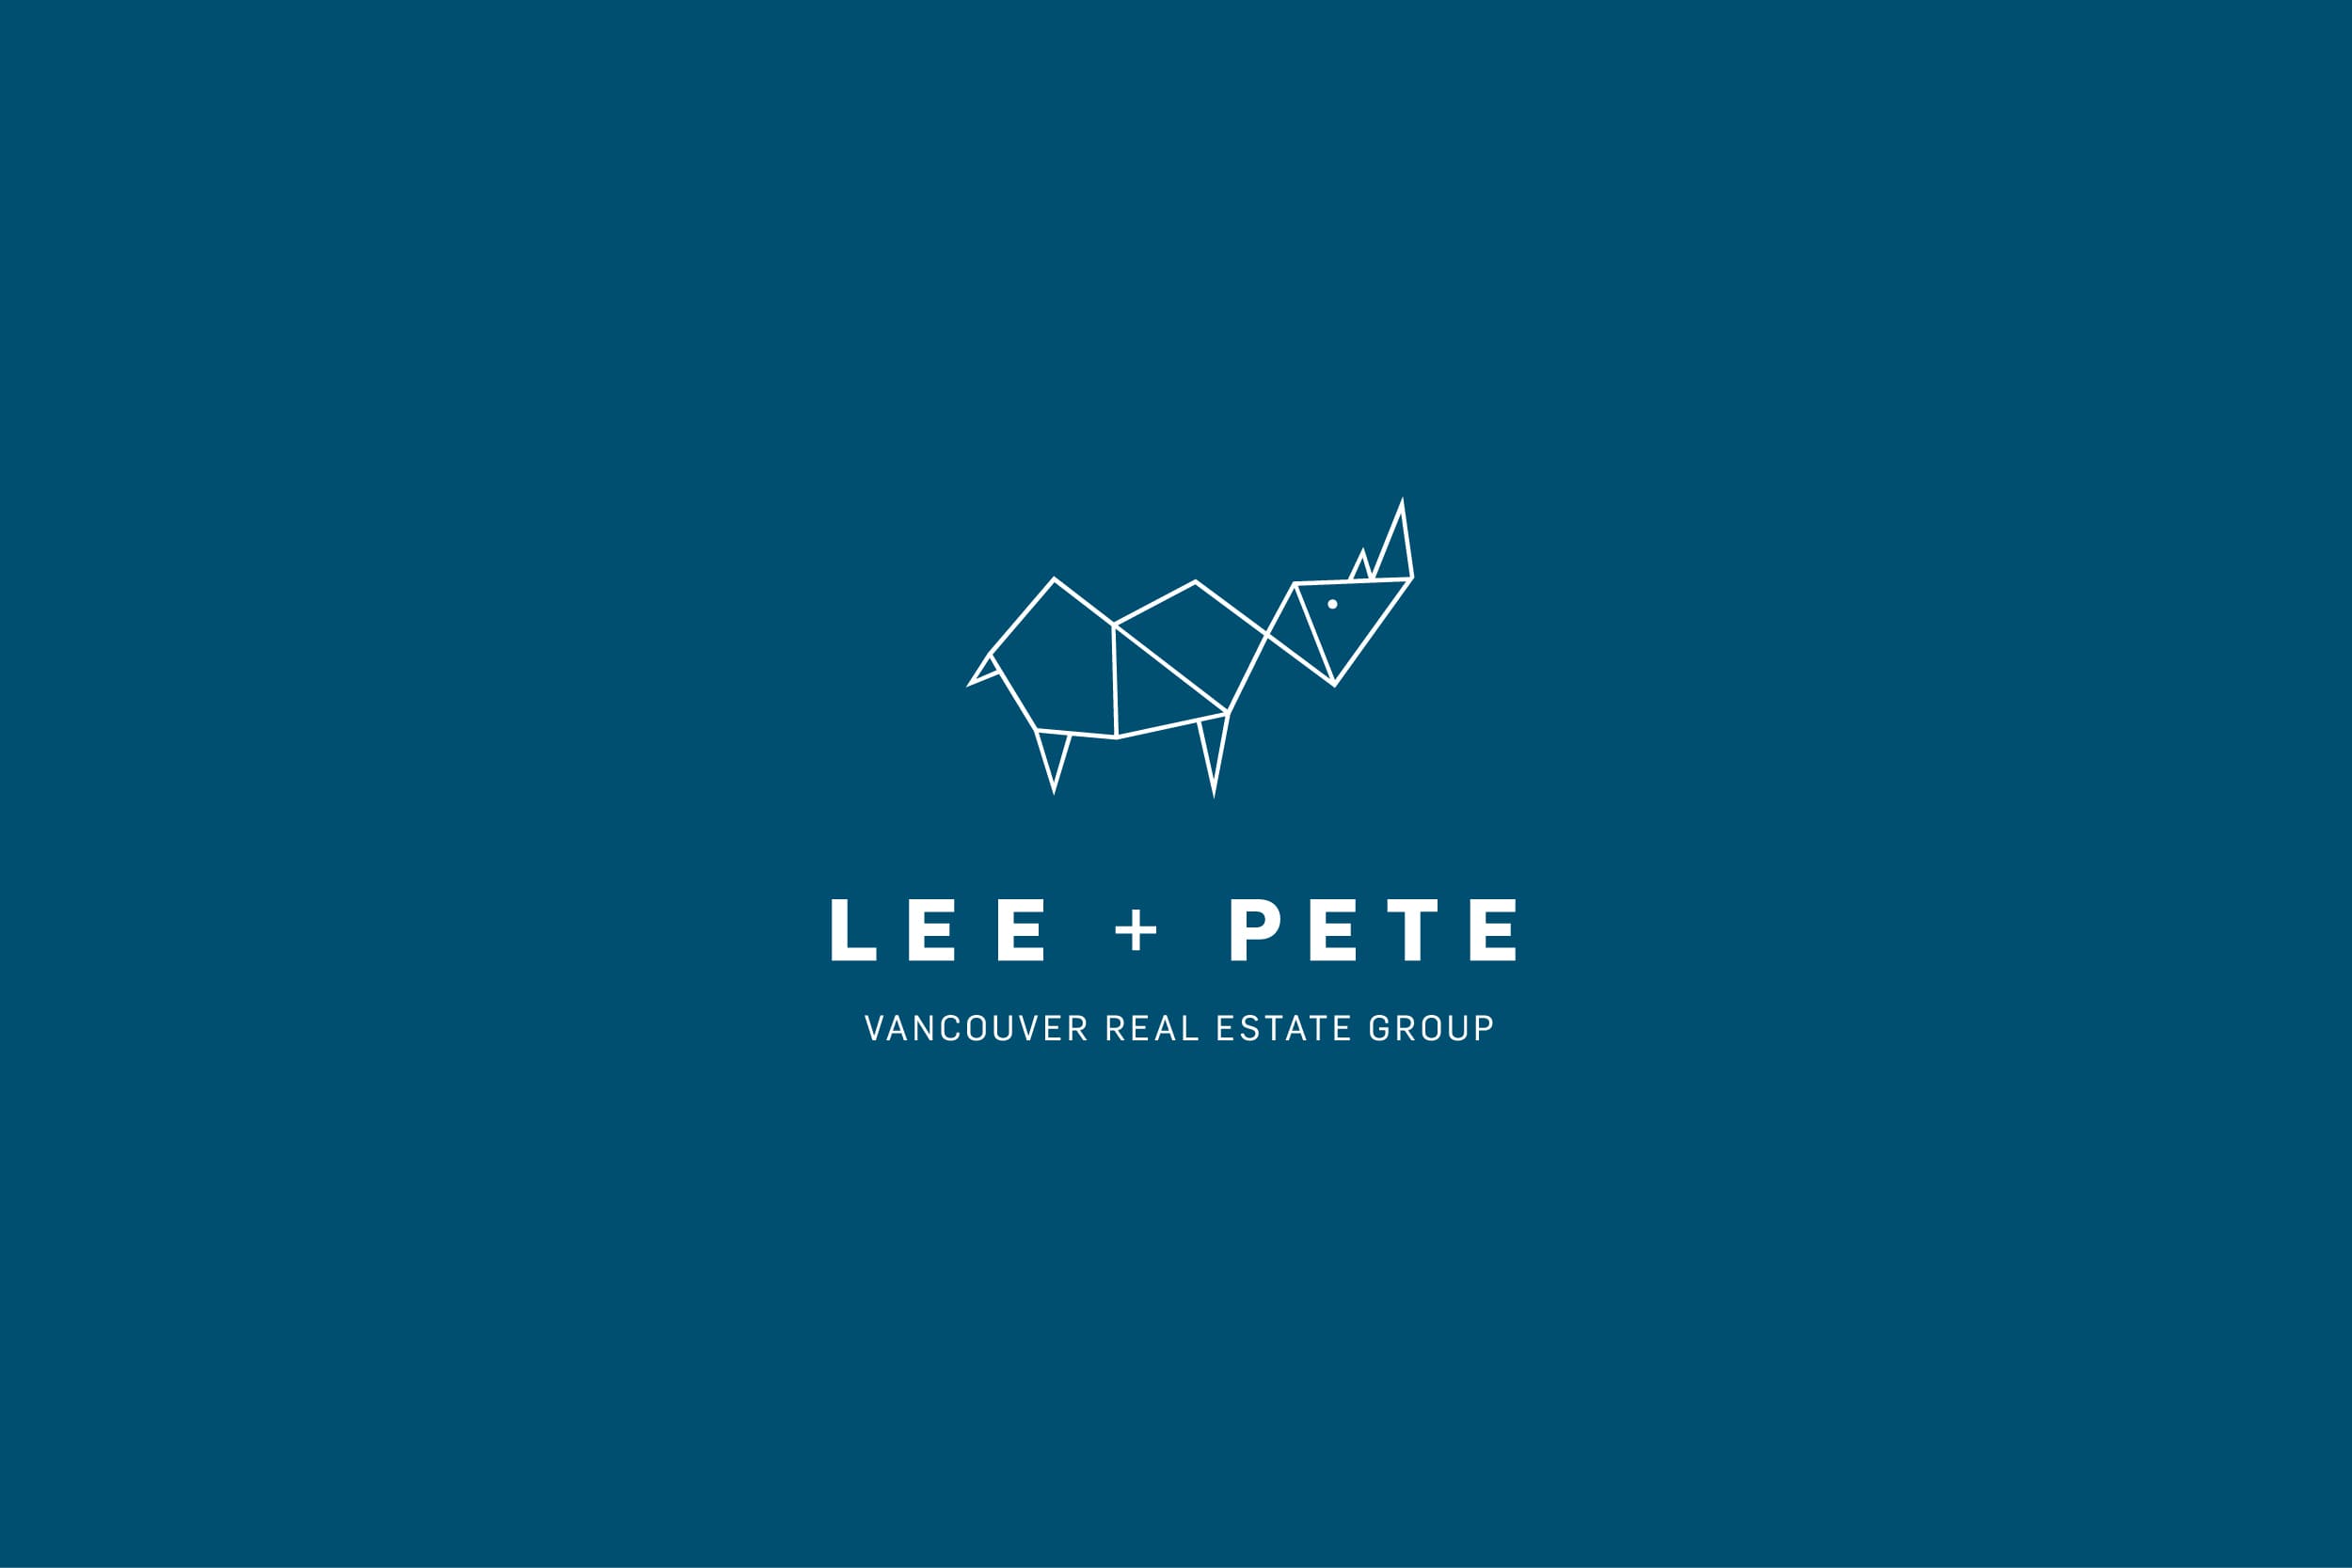 Rebranded Lee + Pete real estate group logo